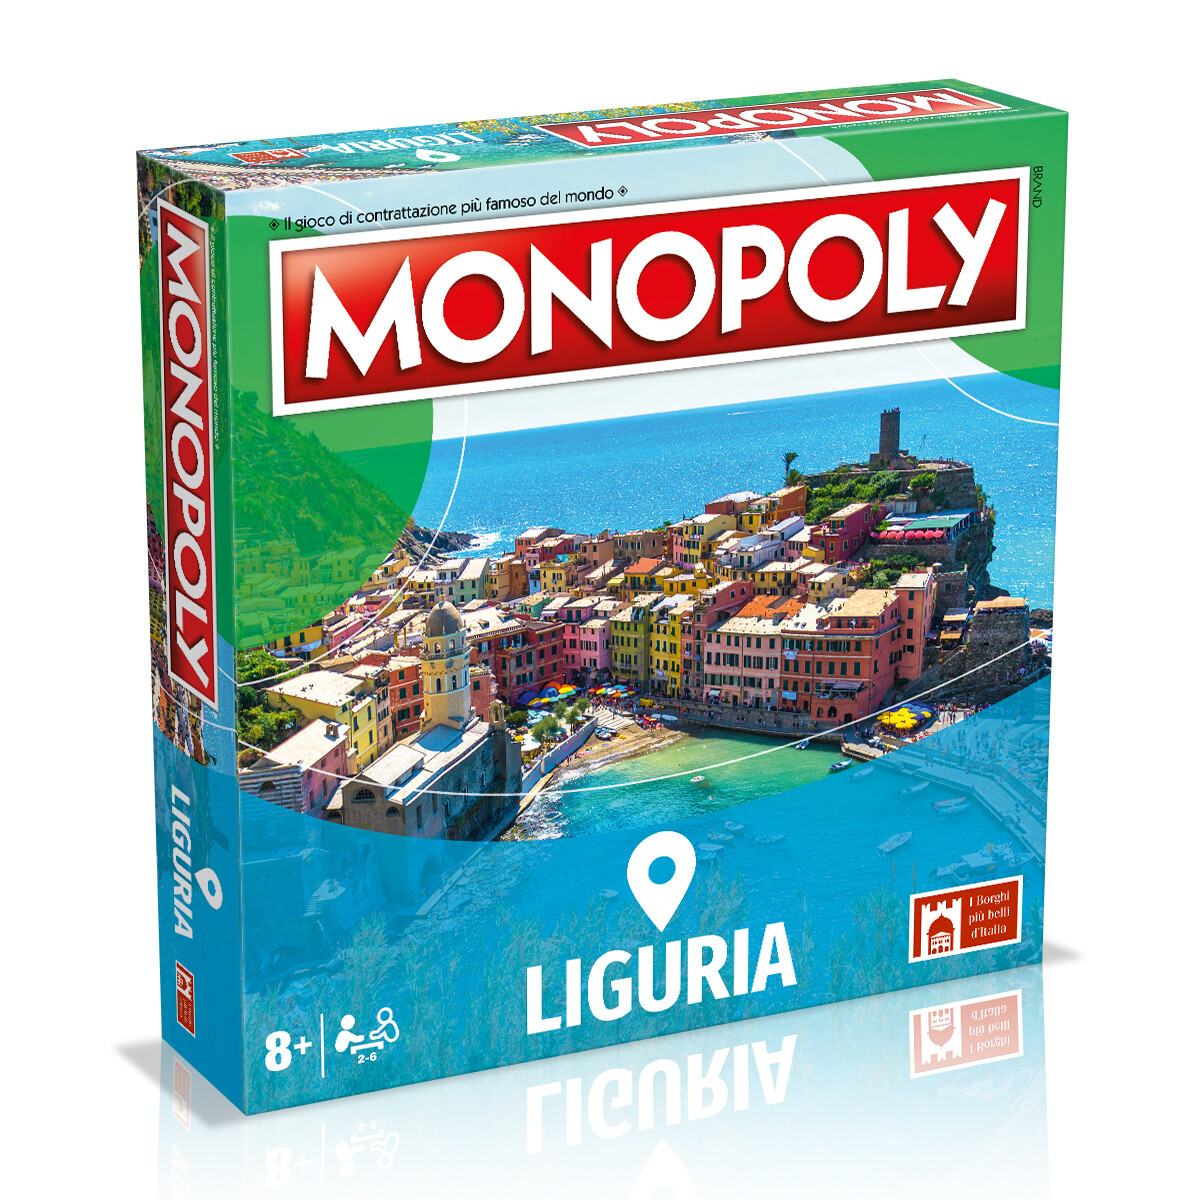 Monopoly - i borghi più belli d'italia - edizione liguria - MONOPOLY